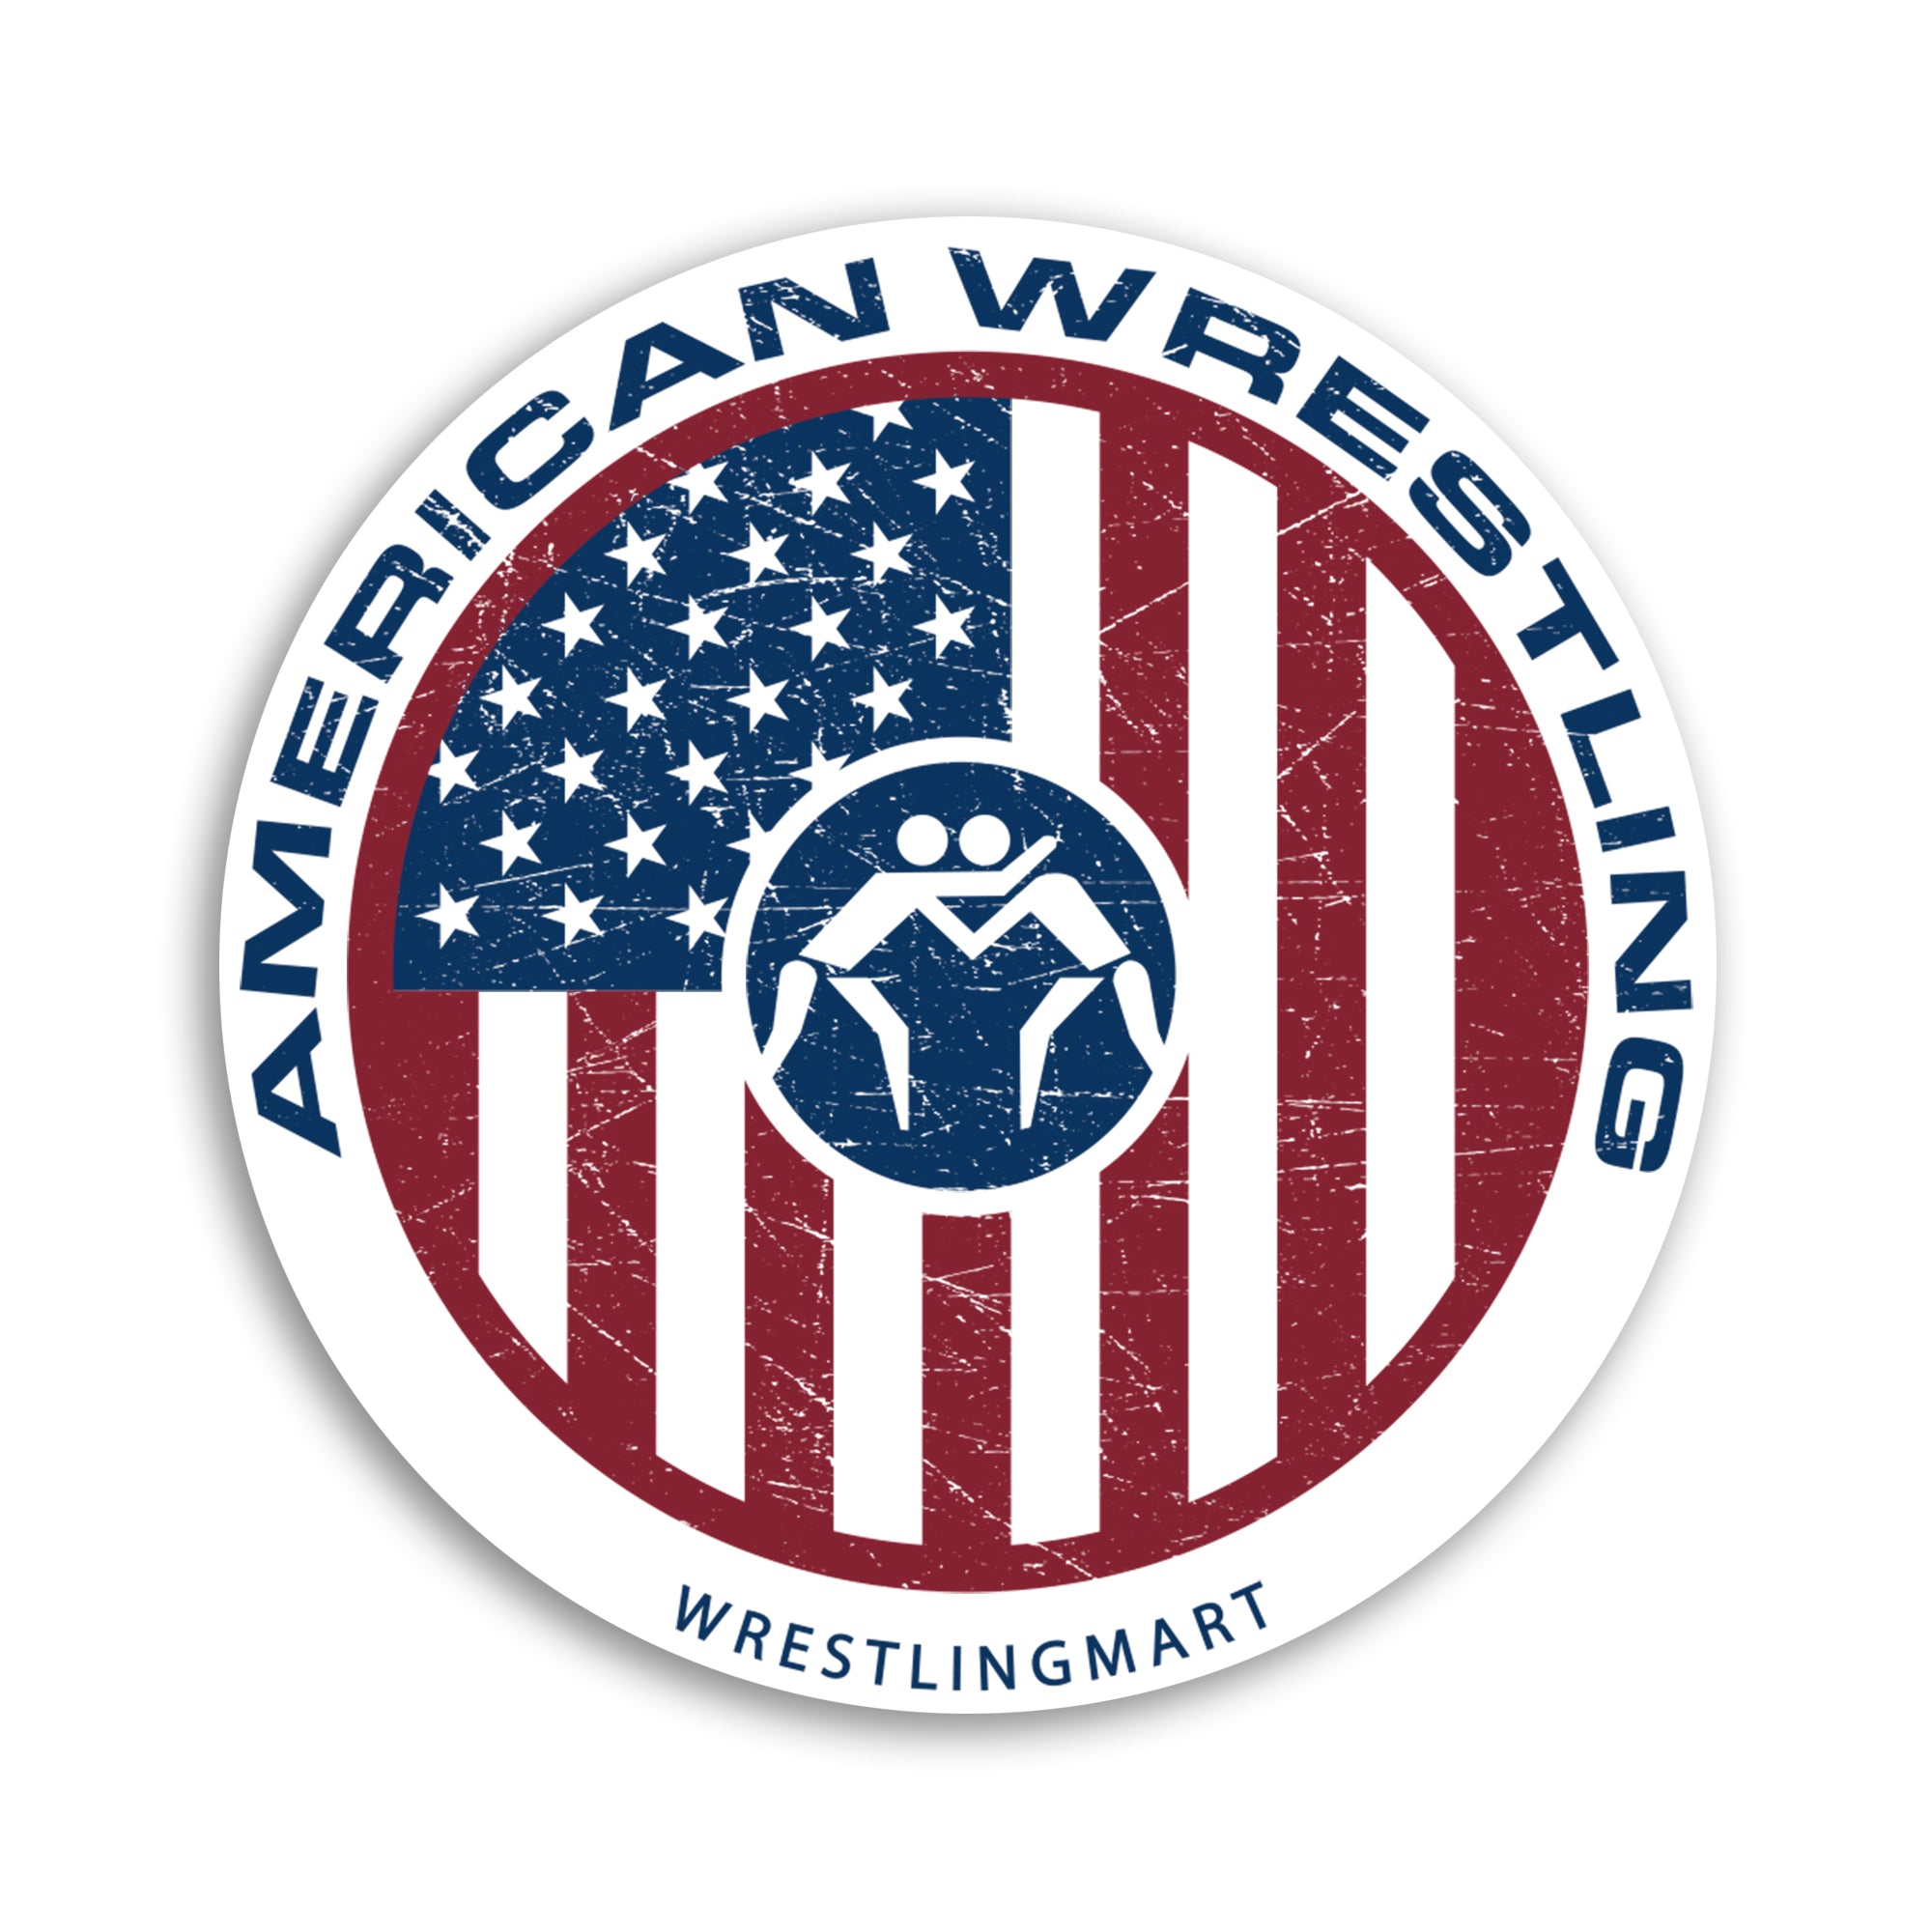 wrestling Sticker